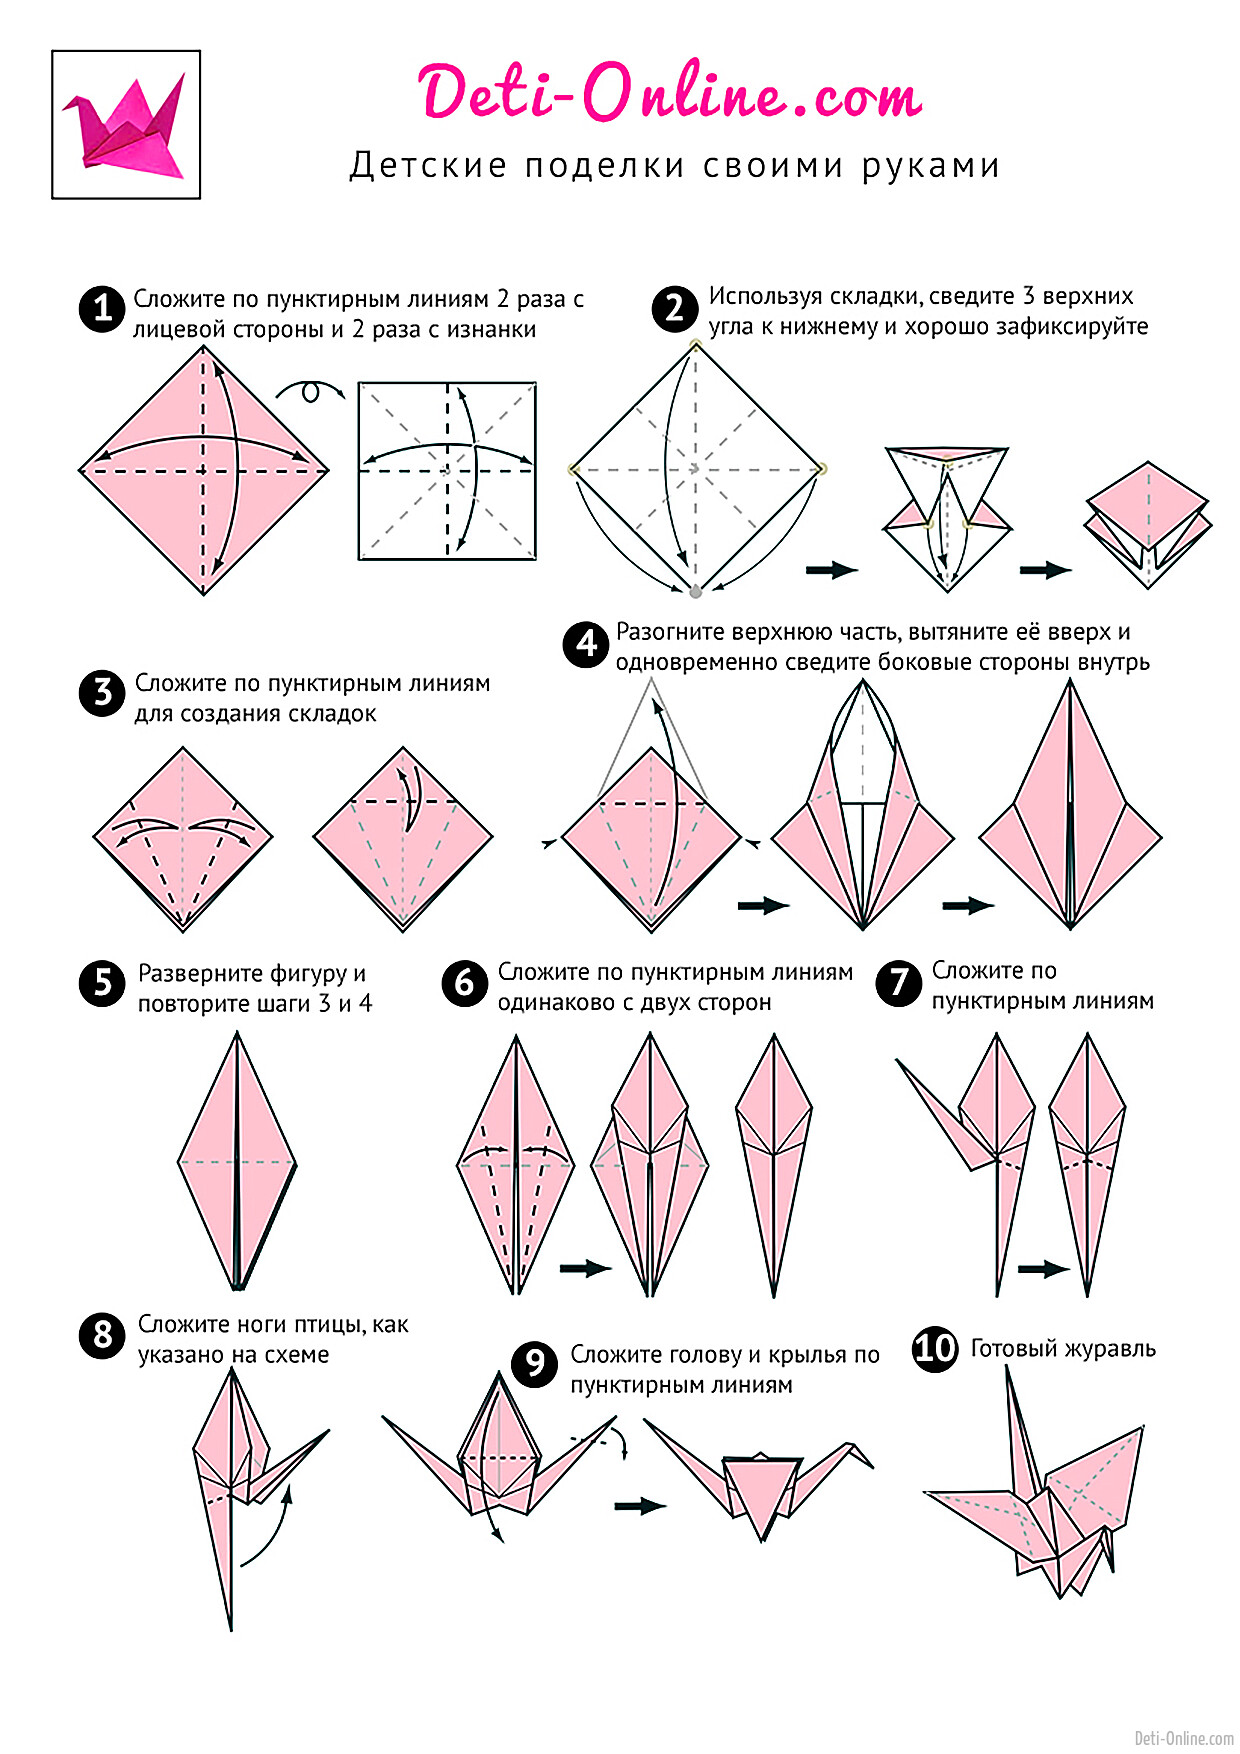 Оригами журавлик простой способ. Журавлик из бумаги схема складывания. Как сделать журавлика из бумаги. Схема журавлика оригами простая для детей. Как сделать журавлика из бумаги пошаговая инструкция.